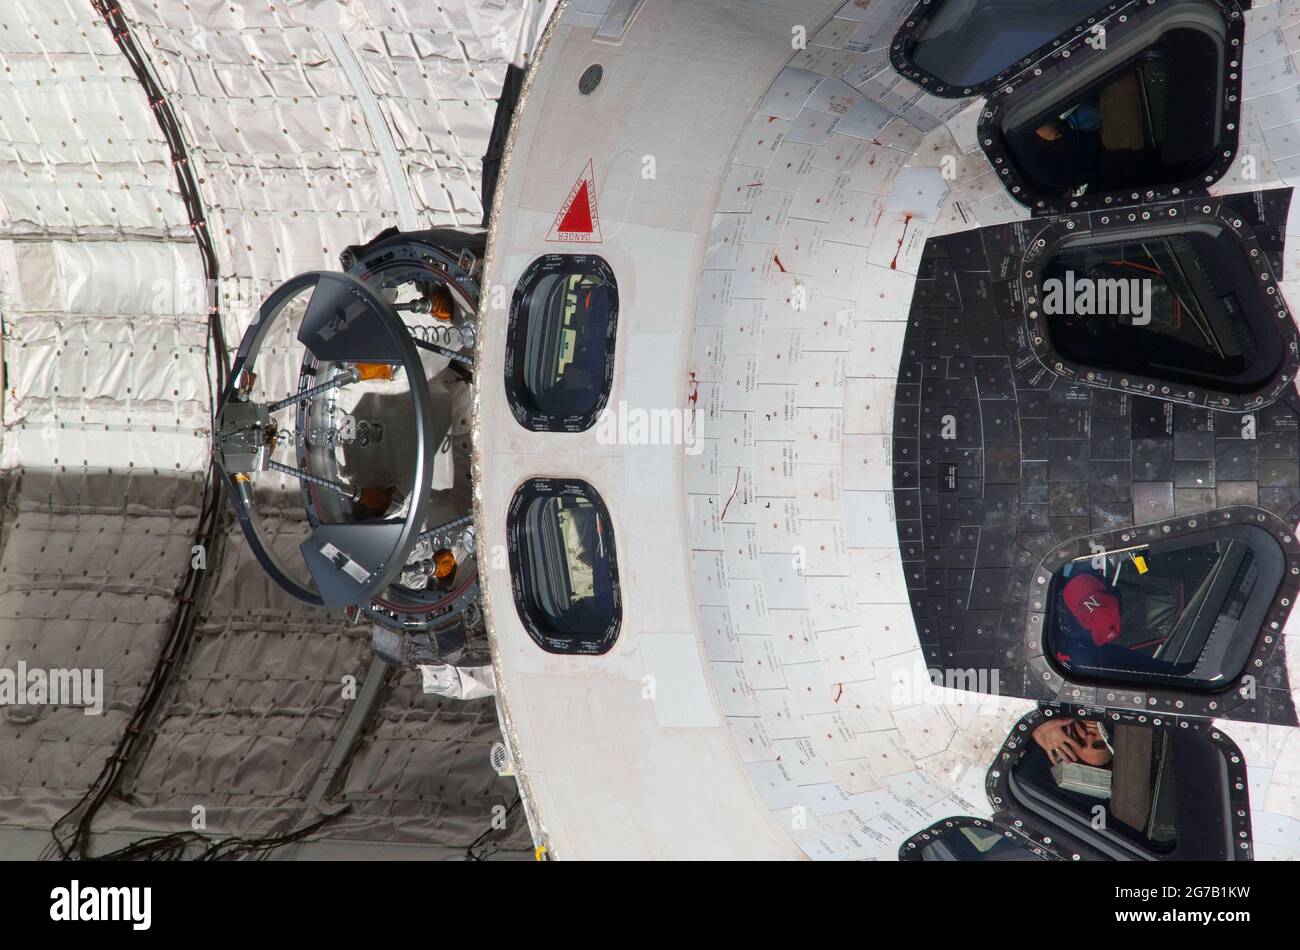 El descubrimiento se acerca a ISS. Esta vista frontal con lente de zoom de 800mm de la parte superior de la cabina del transbordador espacial Discovery fue proporcionada por uno de los miembros de la tripulación de la Expedición 23 a bordo de la Estación Espacial Internacional. El autobús estaba en medio de un giro hacia atrás, realizado para permitir que las cámaras de la estación lo sondearan en busca de posibles daños. Una versión optimizada y mejorada de una imagen de la NASA / crédito obligatorio: NASA. Sólo para uso editorial. Foto de stock